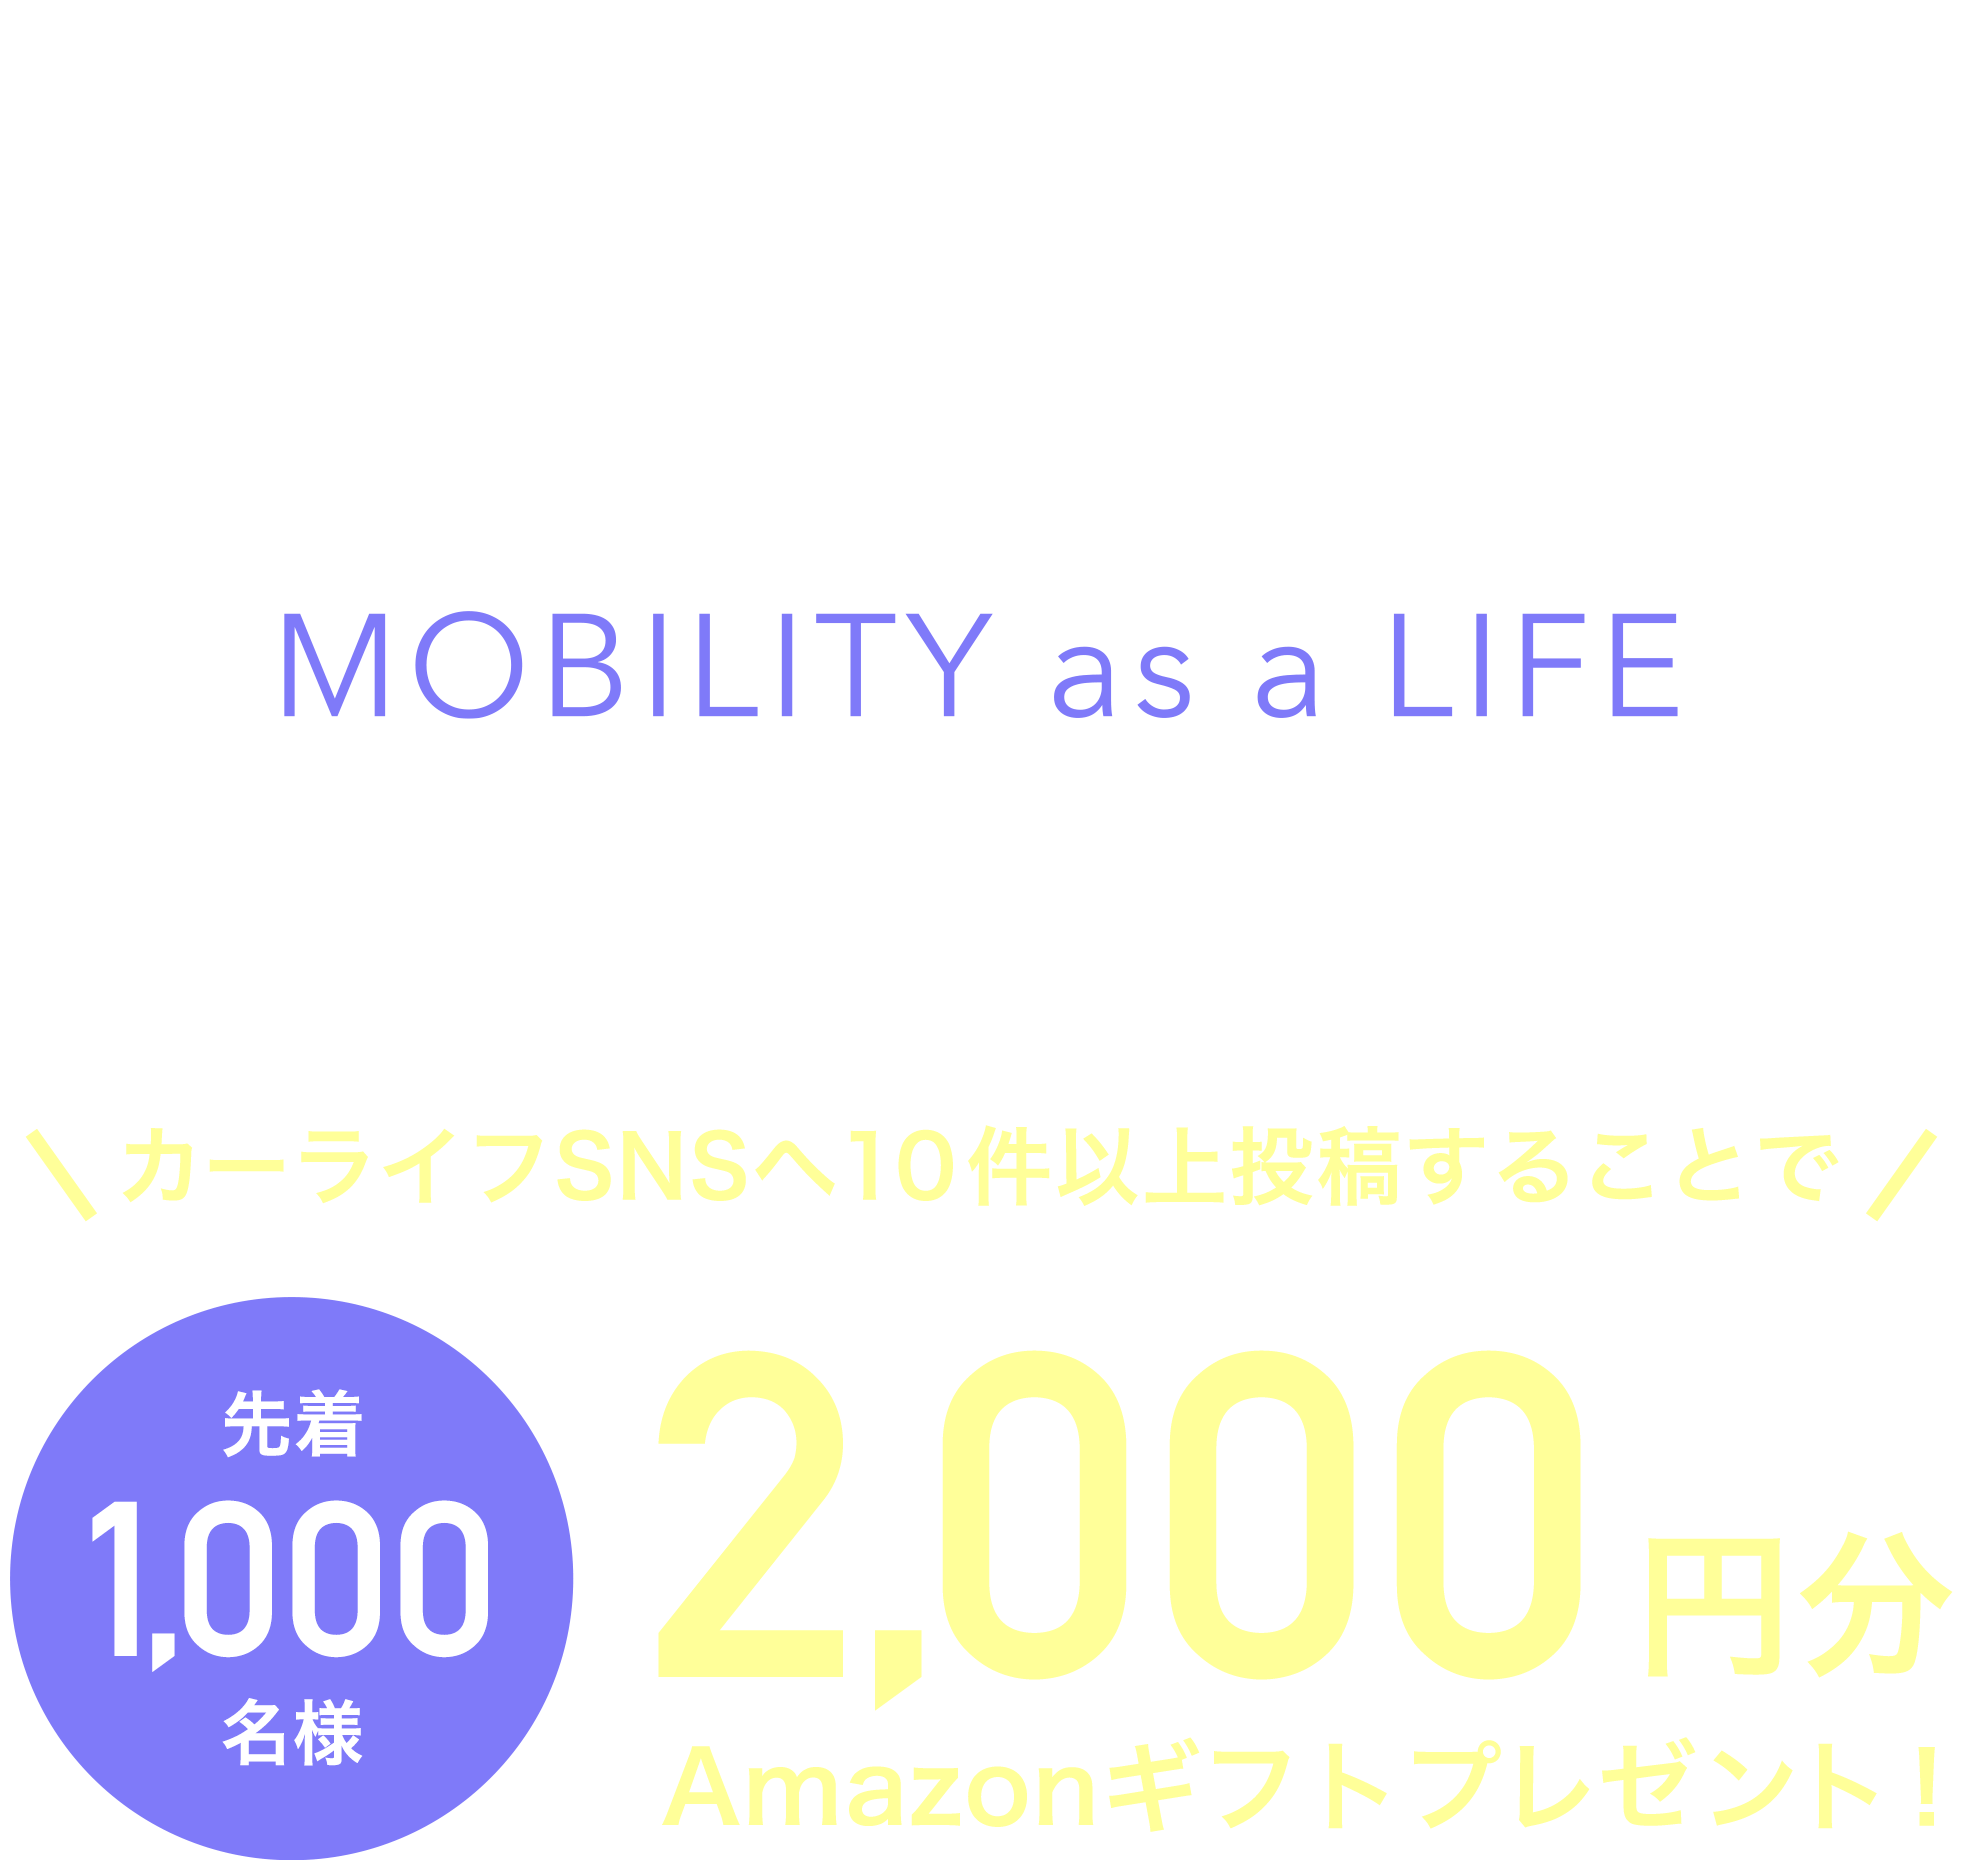 ㈱オートバックスセブンが新たに提供するカーライフ総合情報サイト「MOBILA」先行モニターキャンペーン。カーライフSNSへ10件以上投稿することで先着1,000名様にAmazonギフト2,000円分プレゼント！